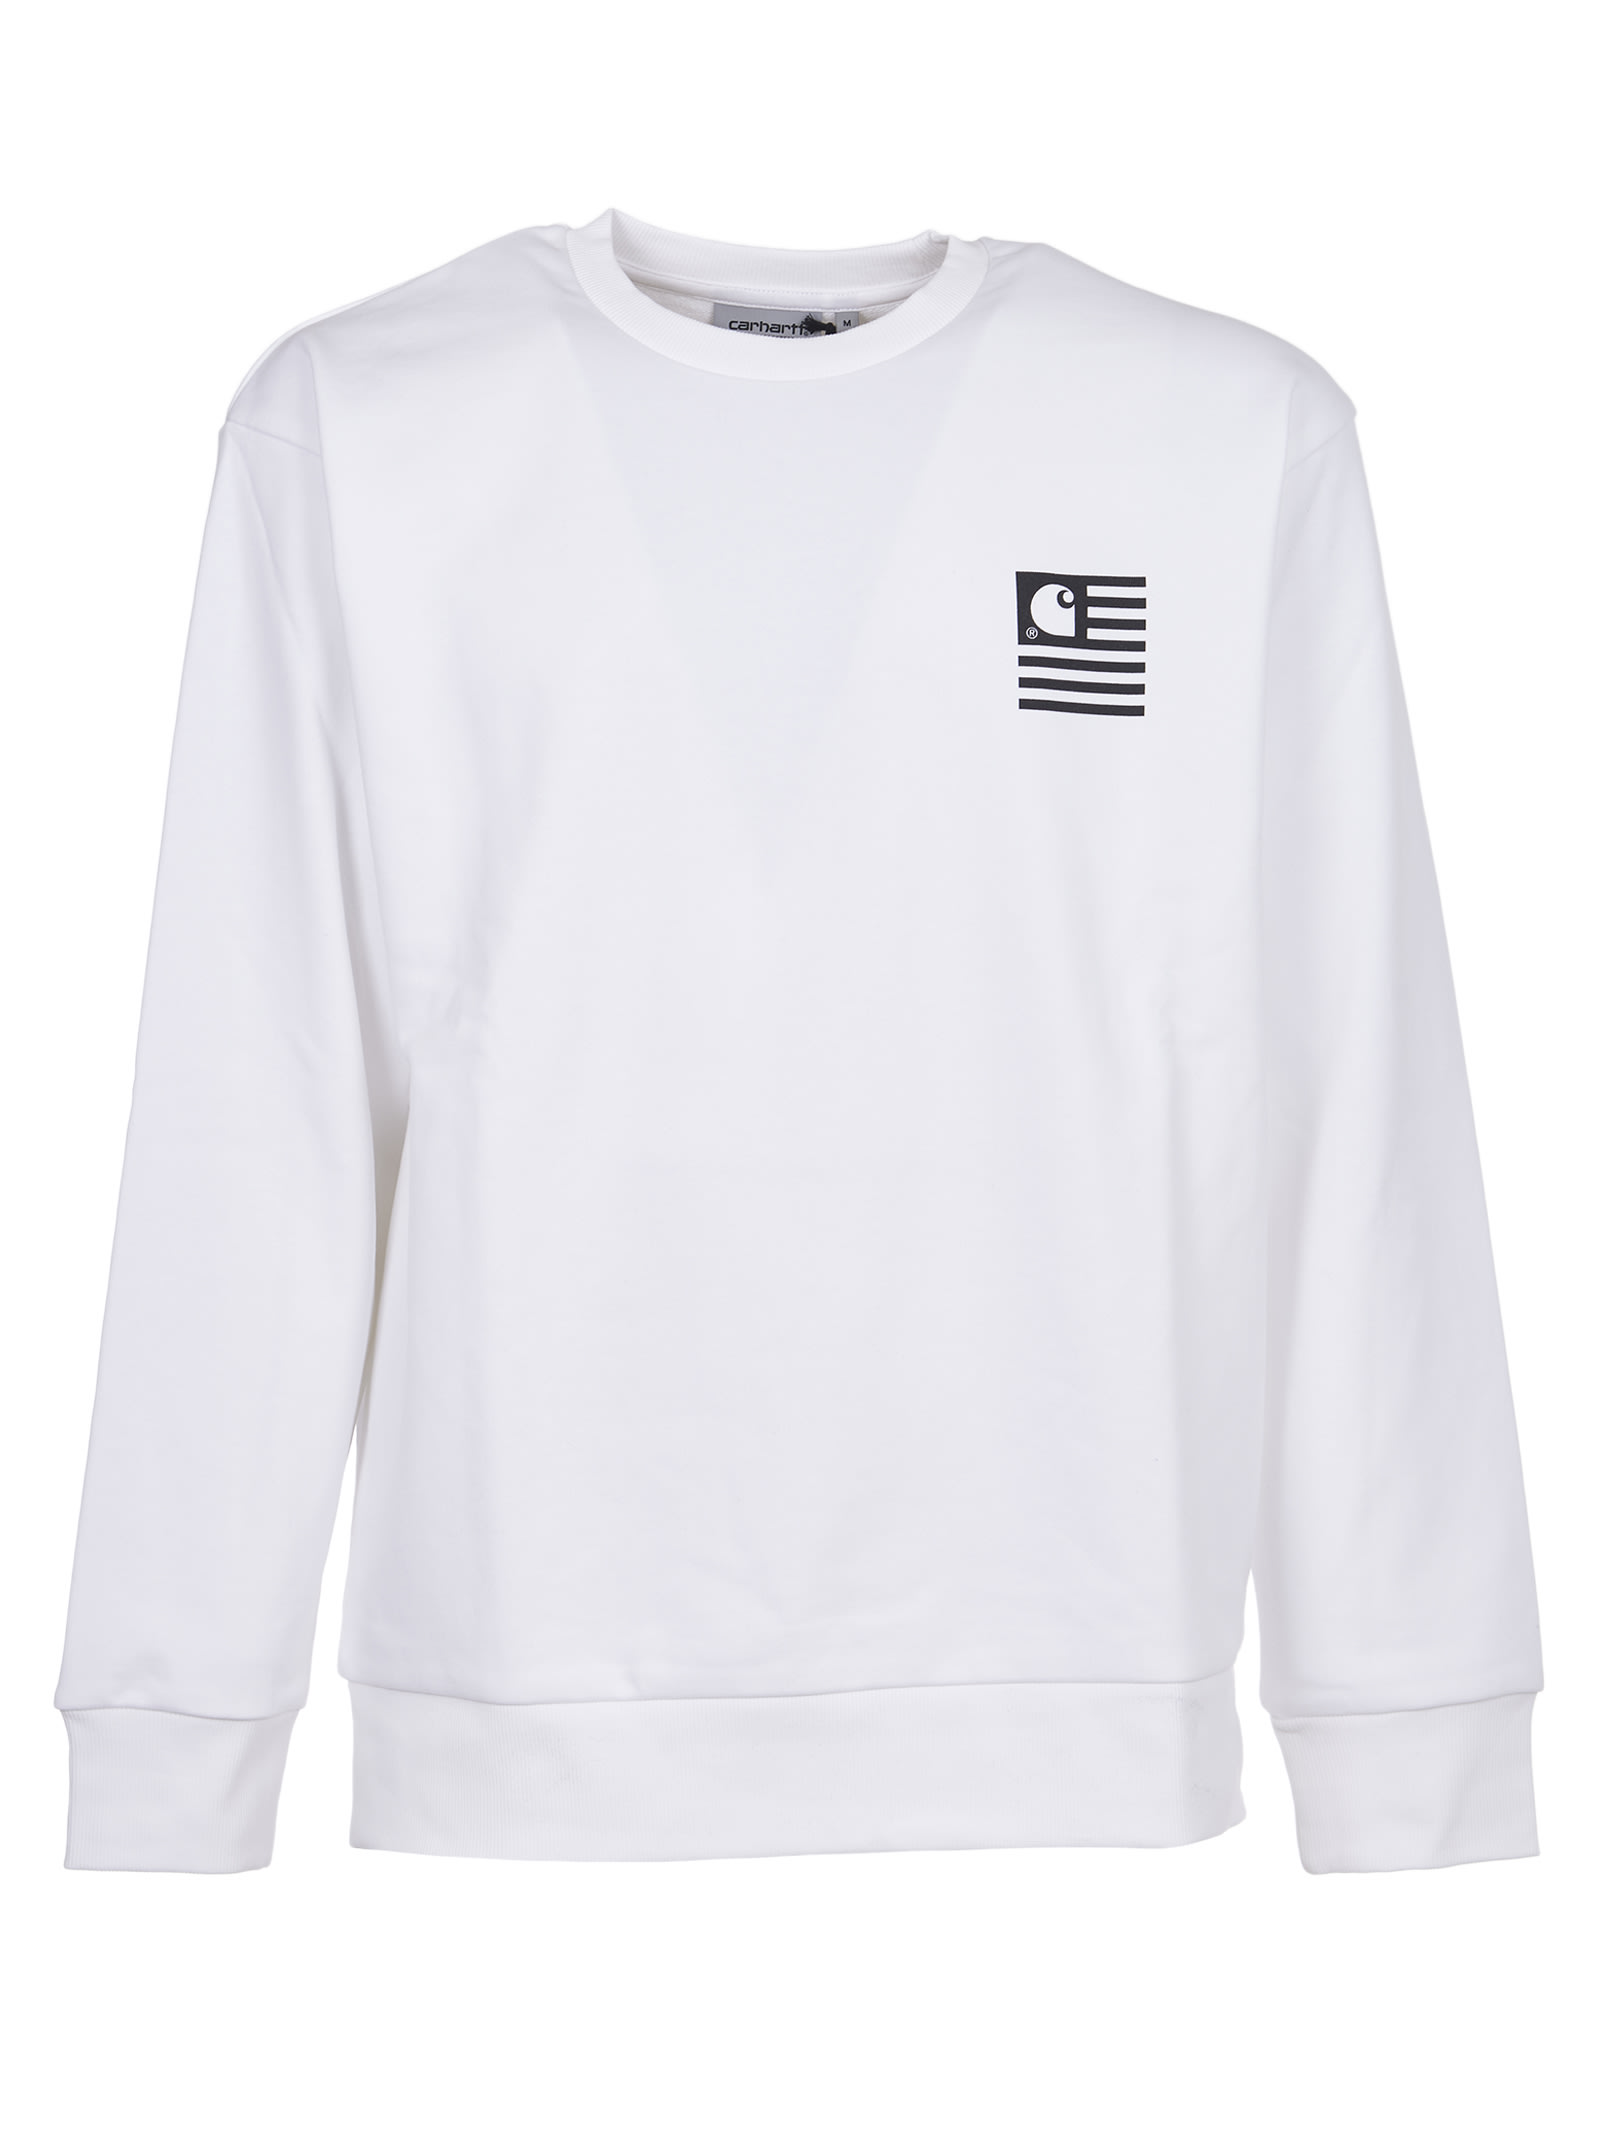 Carhartt White Logo Print Sweatshirt